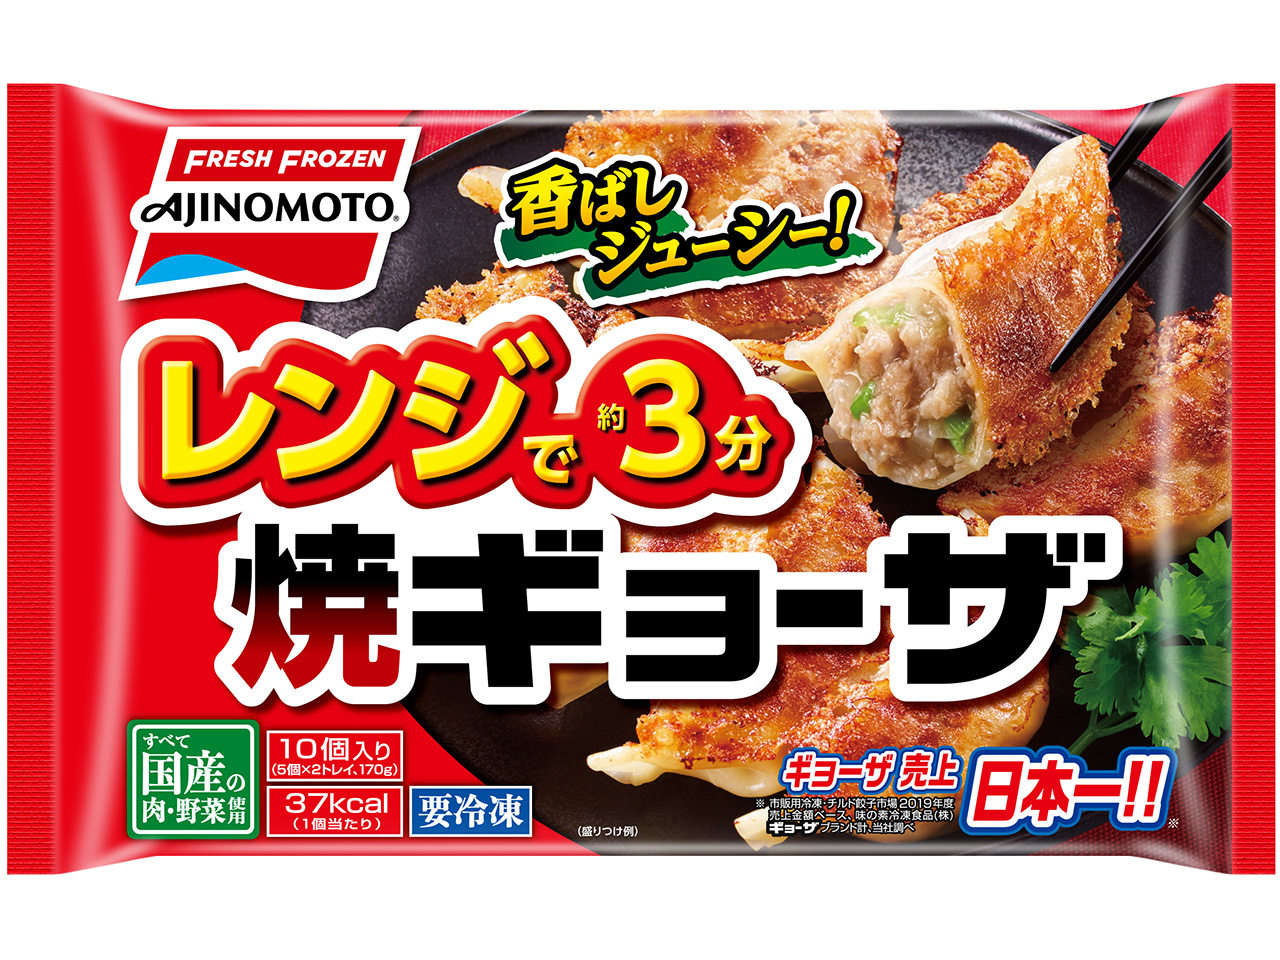 ギョーザ売上日本一の味の素冷凍食品 株 から レンジで焼ギョーザ が新発売 21年2月14日 日 より地域限定で発売開始 味の素 冷凍食品株式会社のプレスリリース